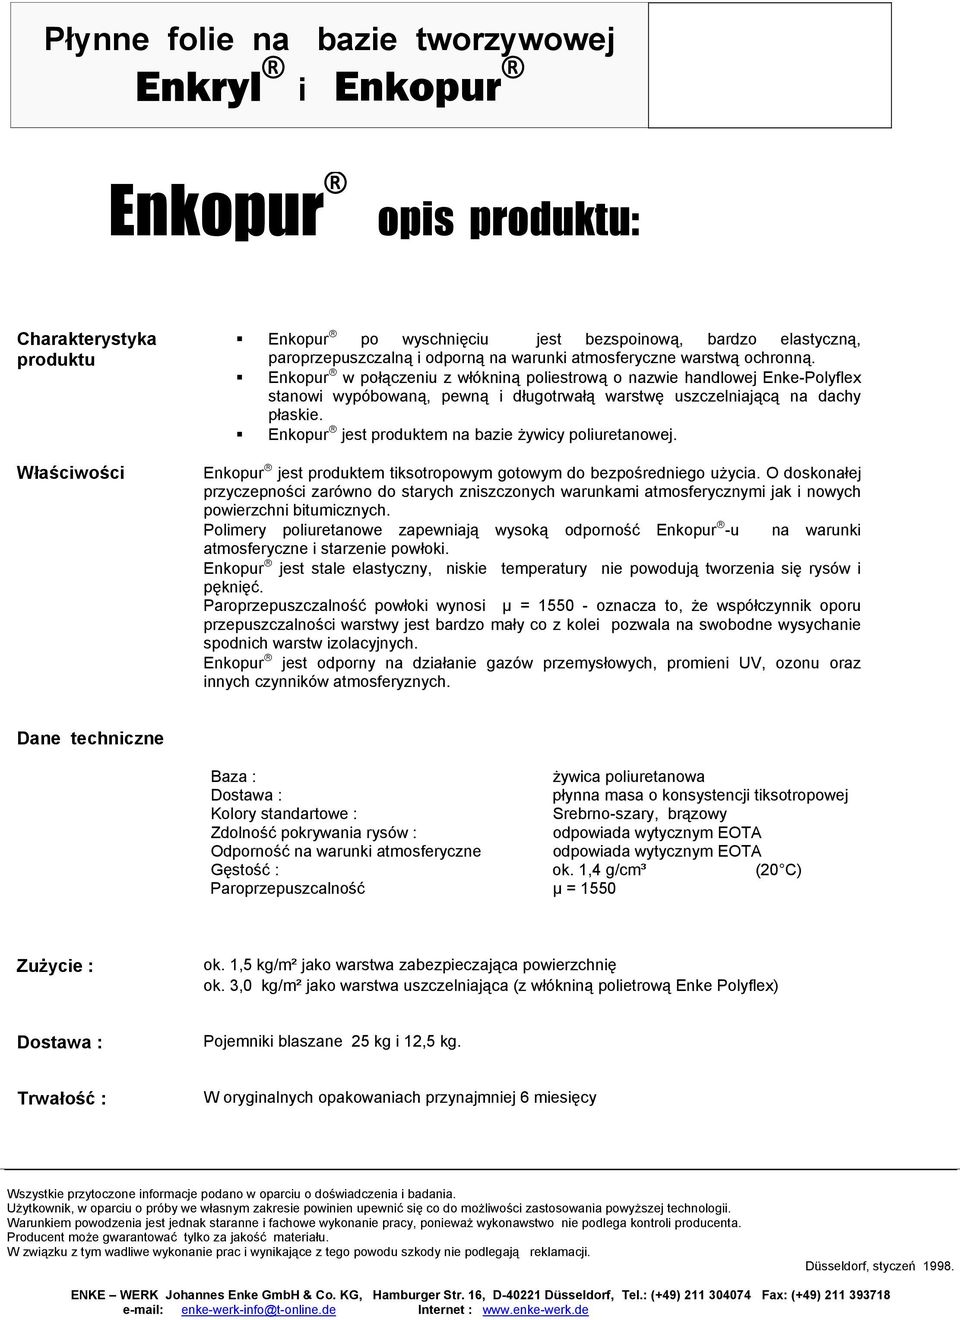 Enkopur jest produktem na bazie żywicy poliuretanowej. Enkopur jest produktem tiksotropowym gotowym do bezpośredniego użycia.